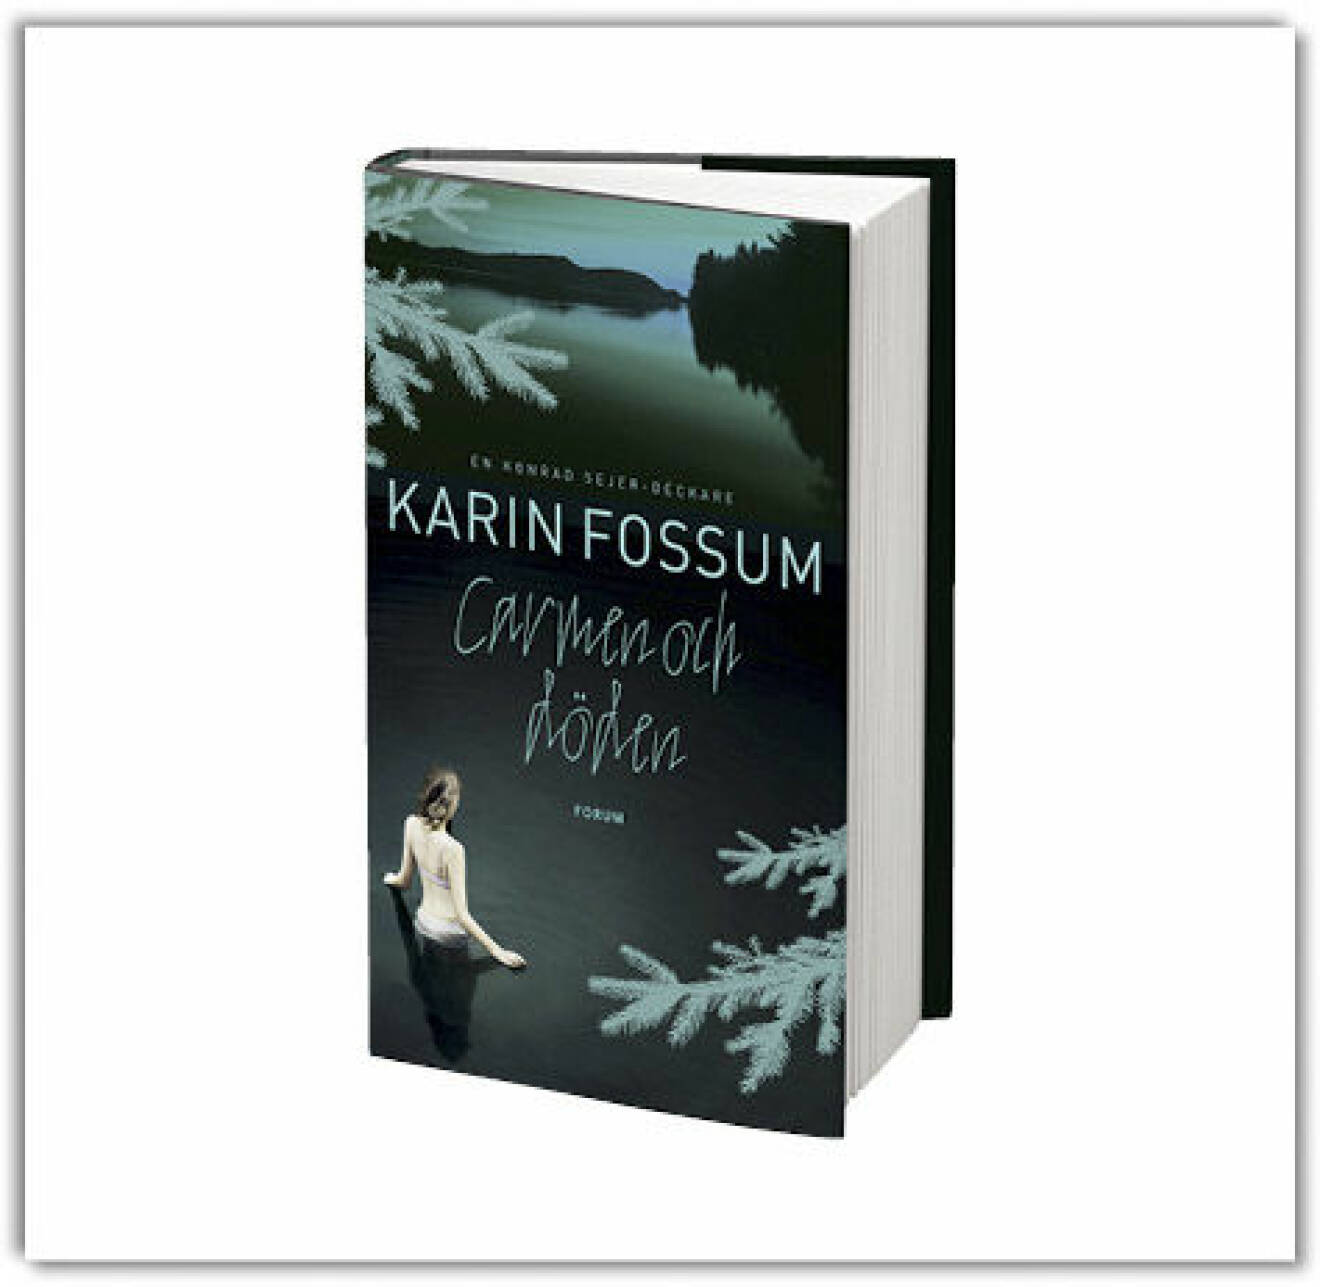 För Carmen och döden (Forum) har Karin Fossum